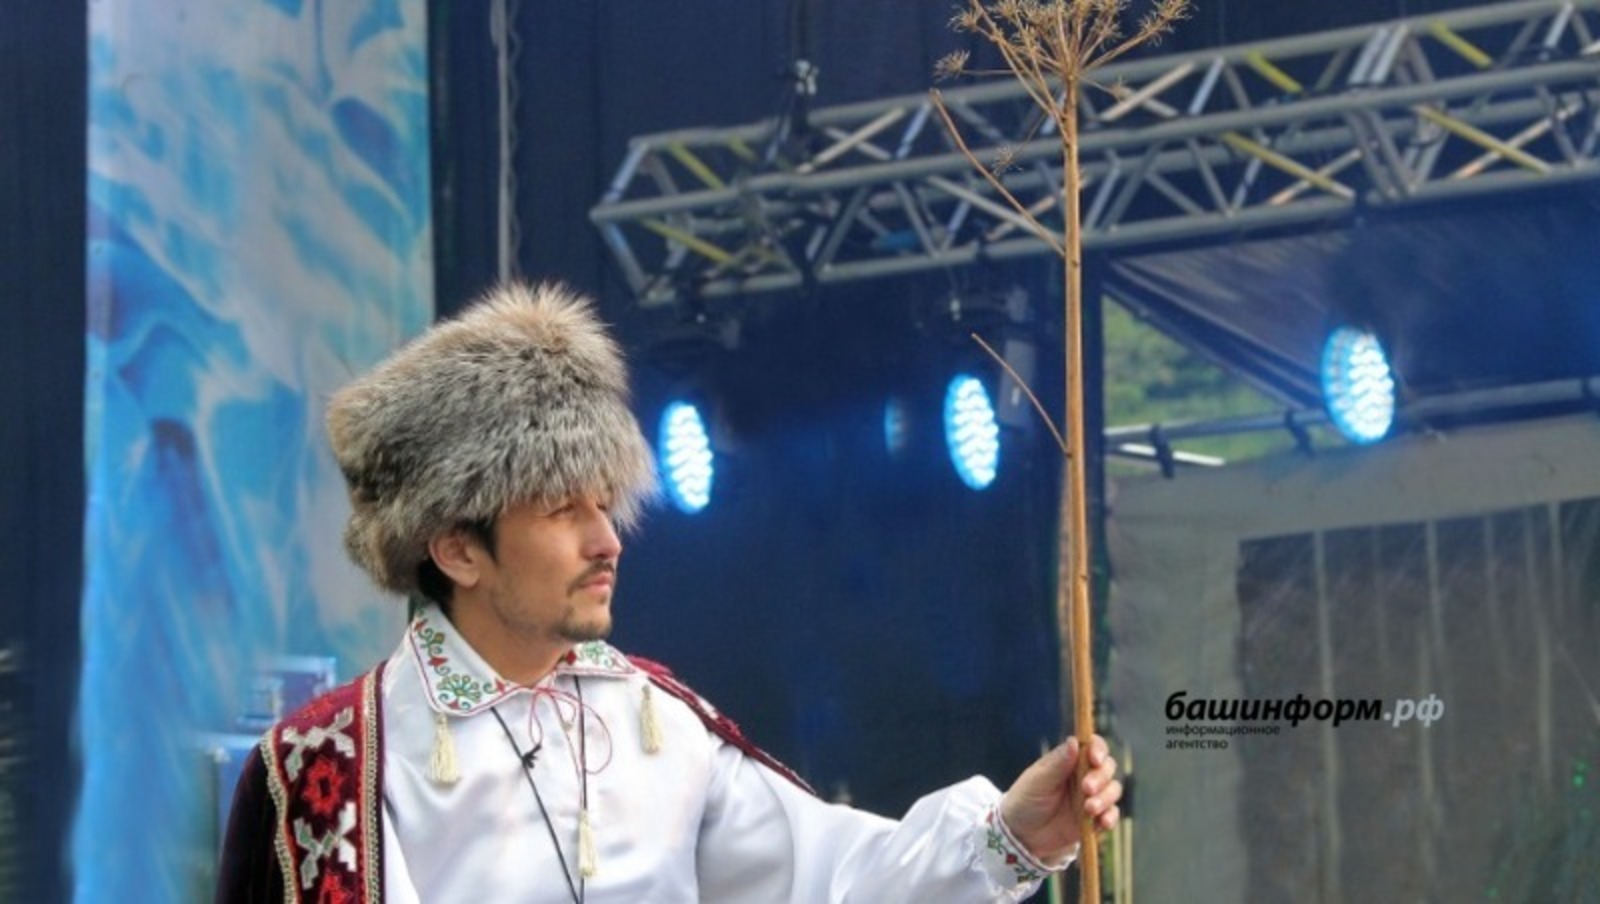 Башкирскую народную музыку можно послушать на всех цифровых площадках мира.